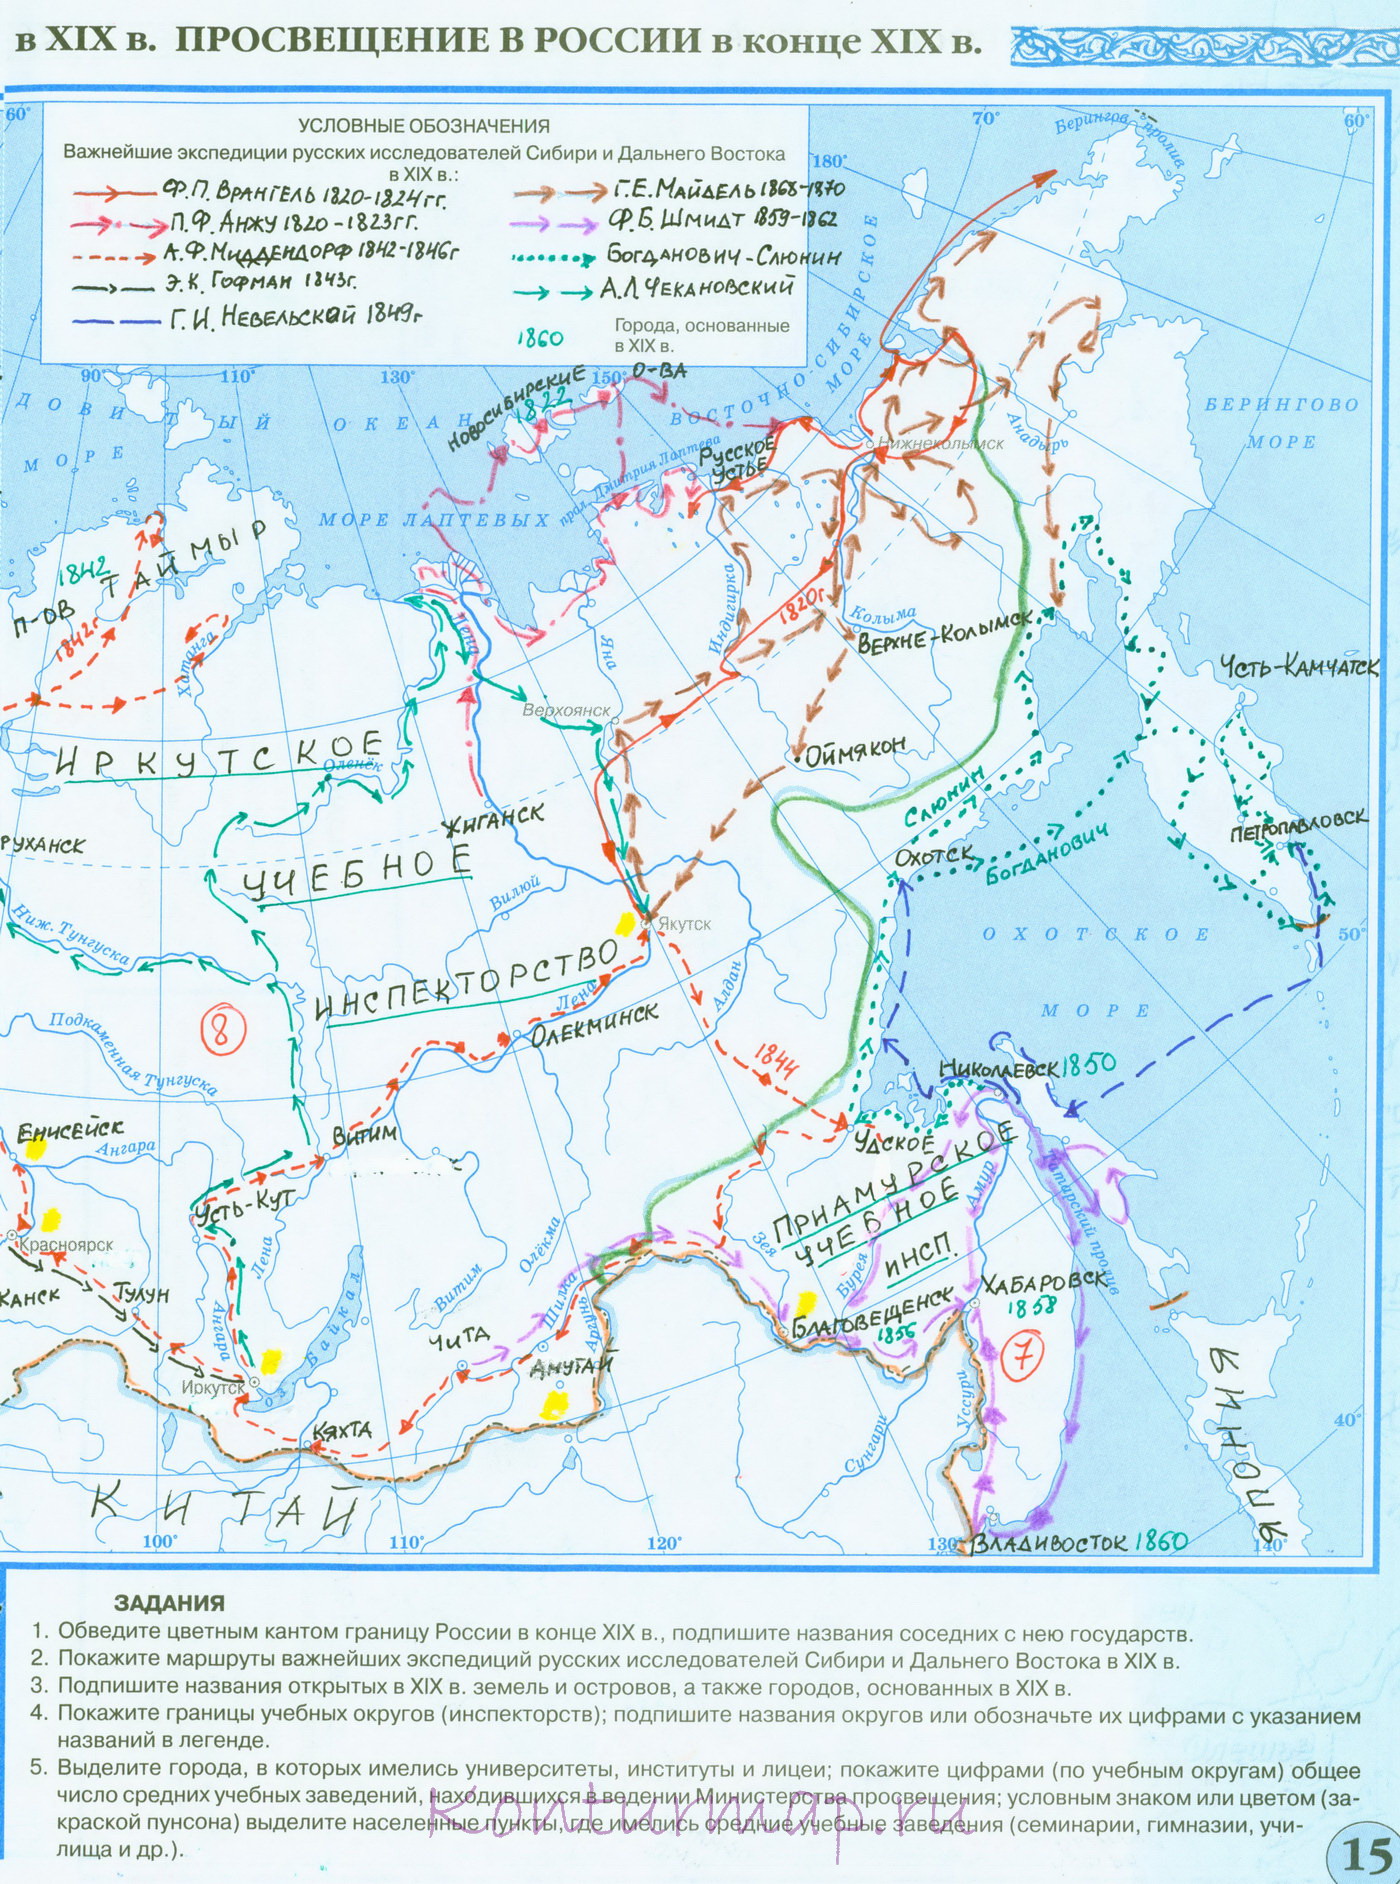 Экономическое развитие россии в первой половине 19 века контурная карта гдз